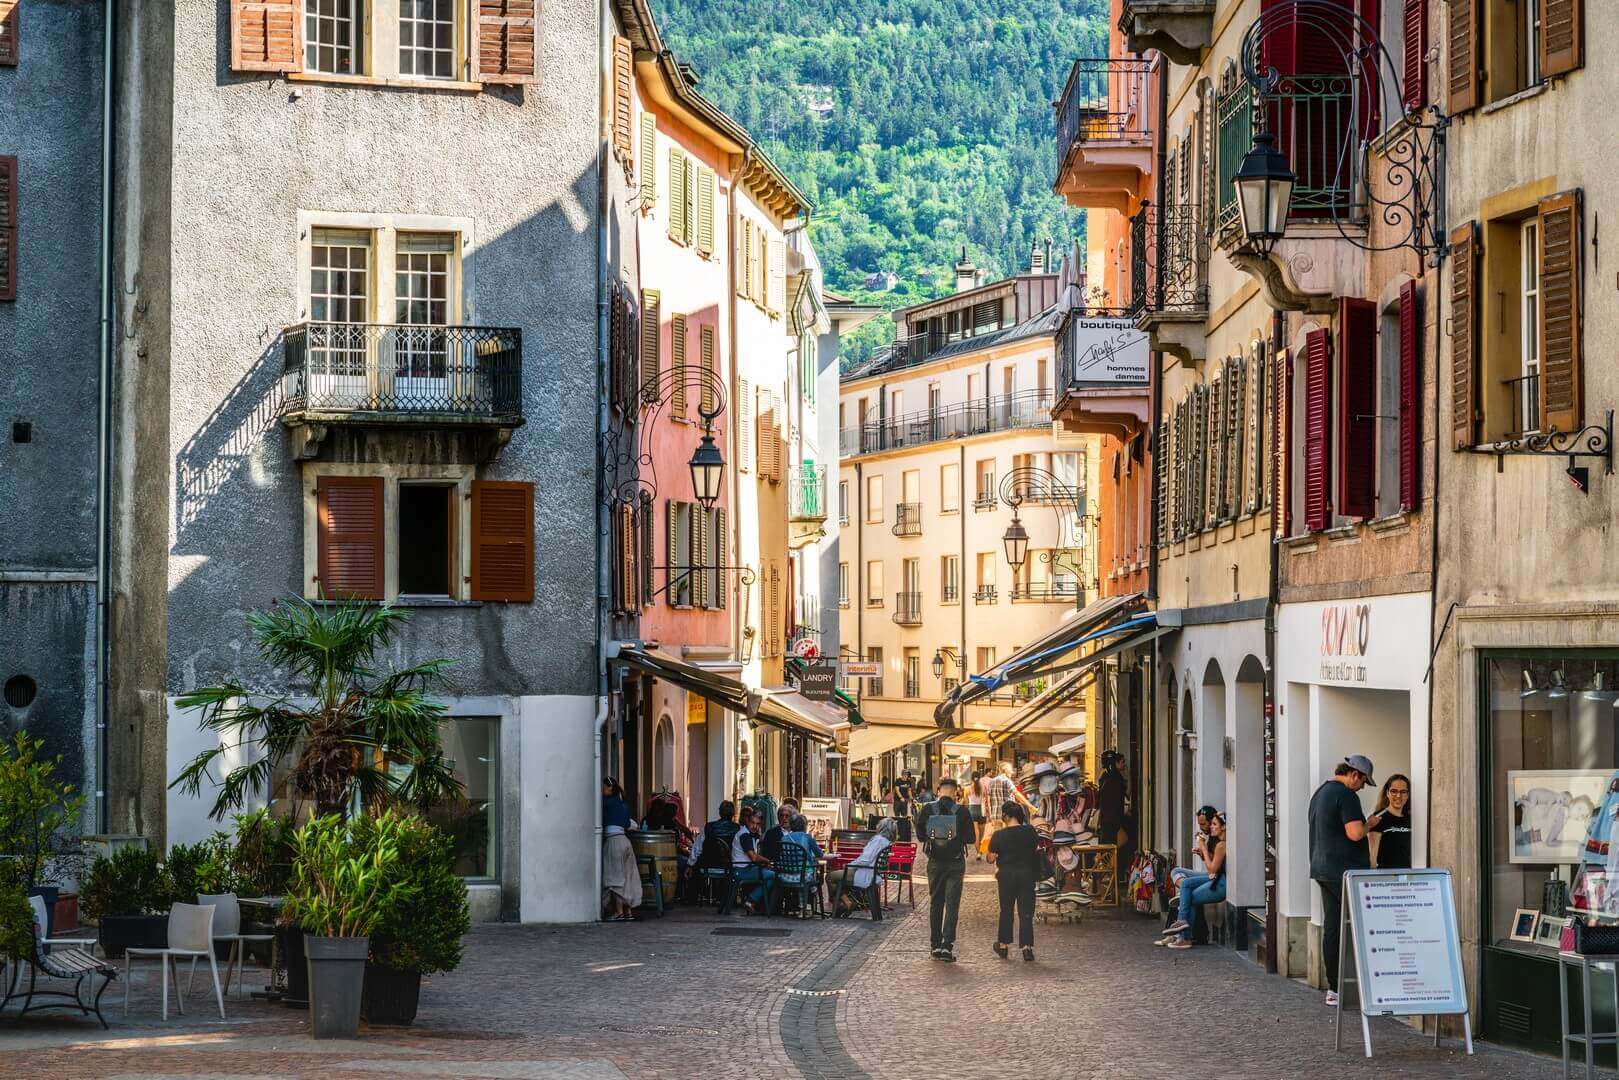 Les gens dans la ruelle piétonne le jour d'été ensoleillé avec une lumière dramatique dans la vieille ville de Sion en Suisse